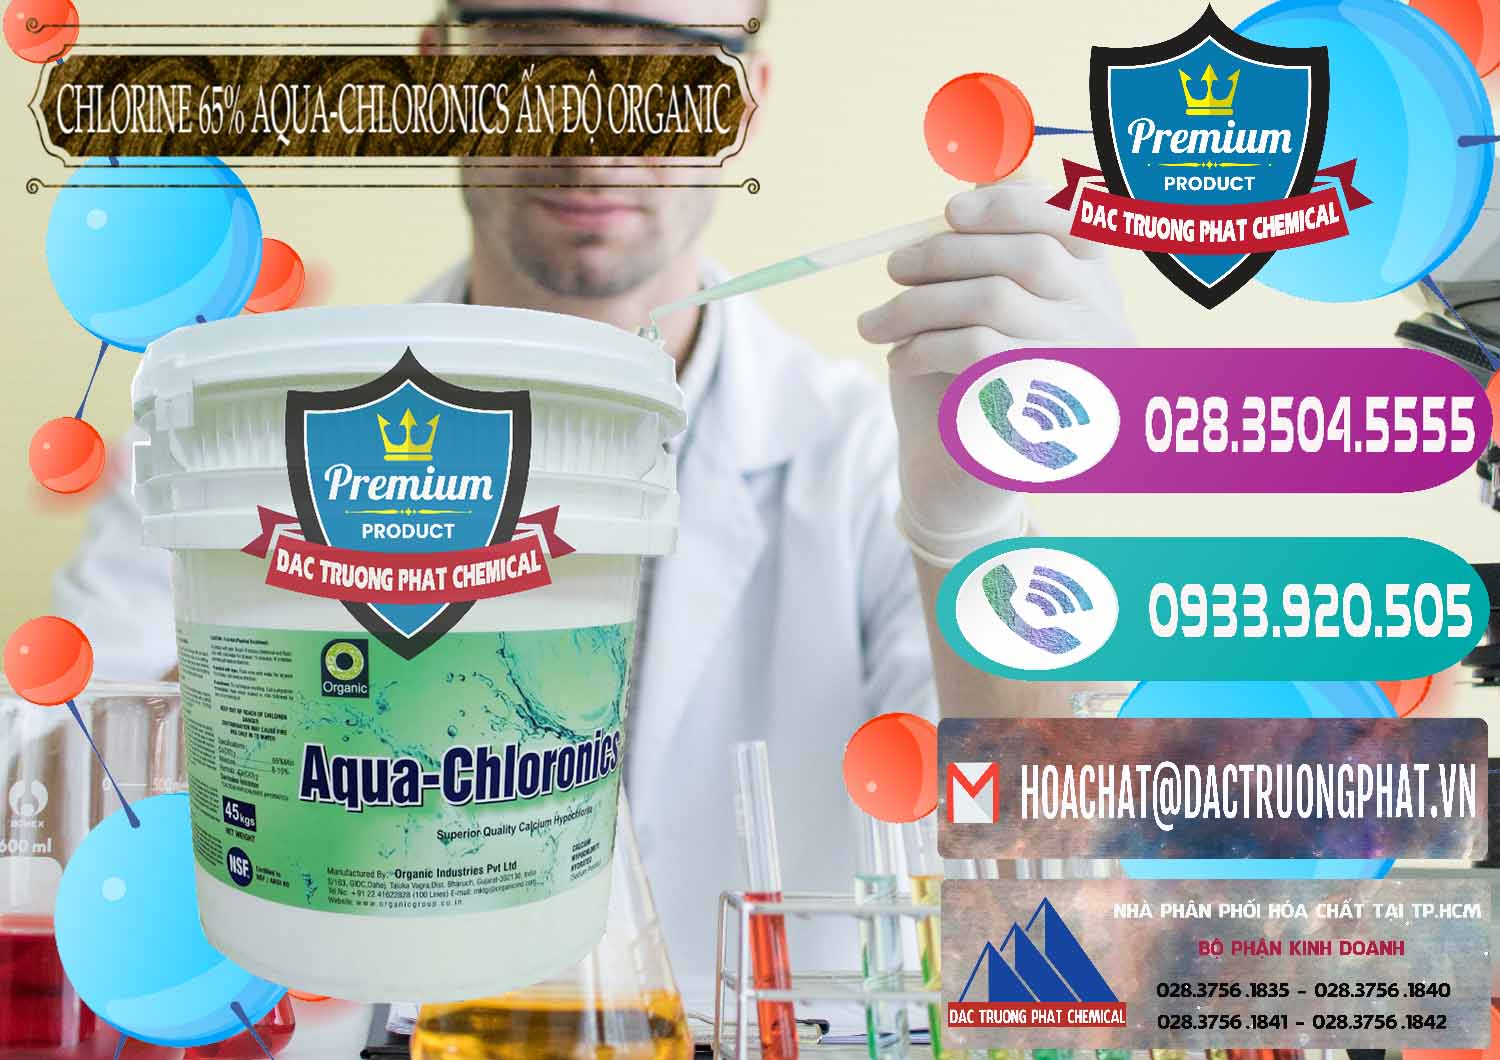 Đơn vị chuyên bán - cung cấp Chlorine – Clorin 65% Aqua-Chloronics Ấn Độ Organic India - 0210 - Cung cấp _ bán hóa chất tại TP.HCM - hoachatxulynuoc.com